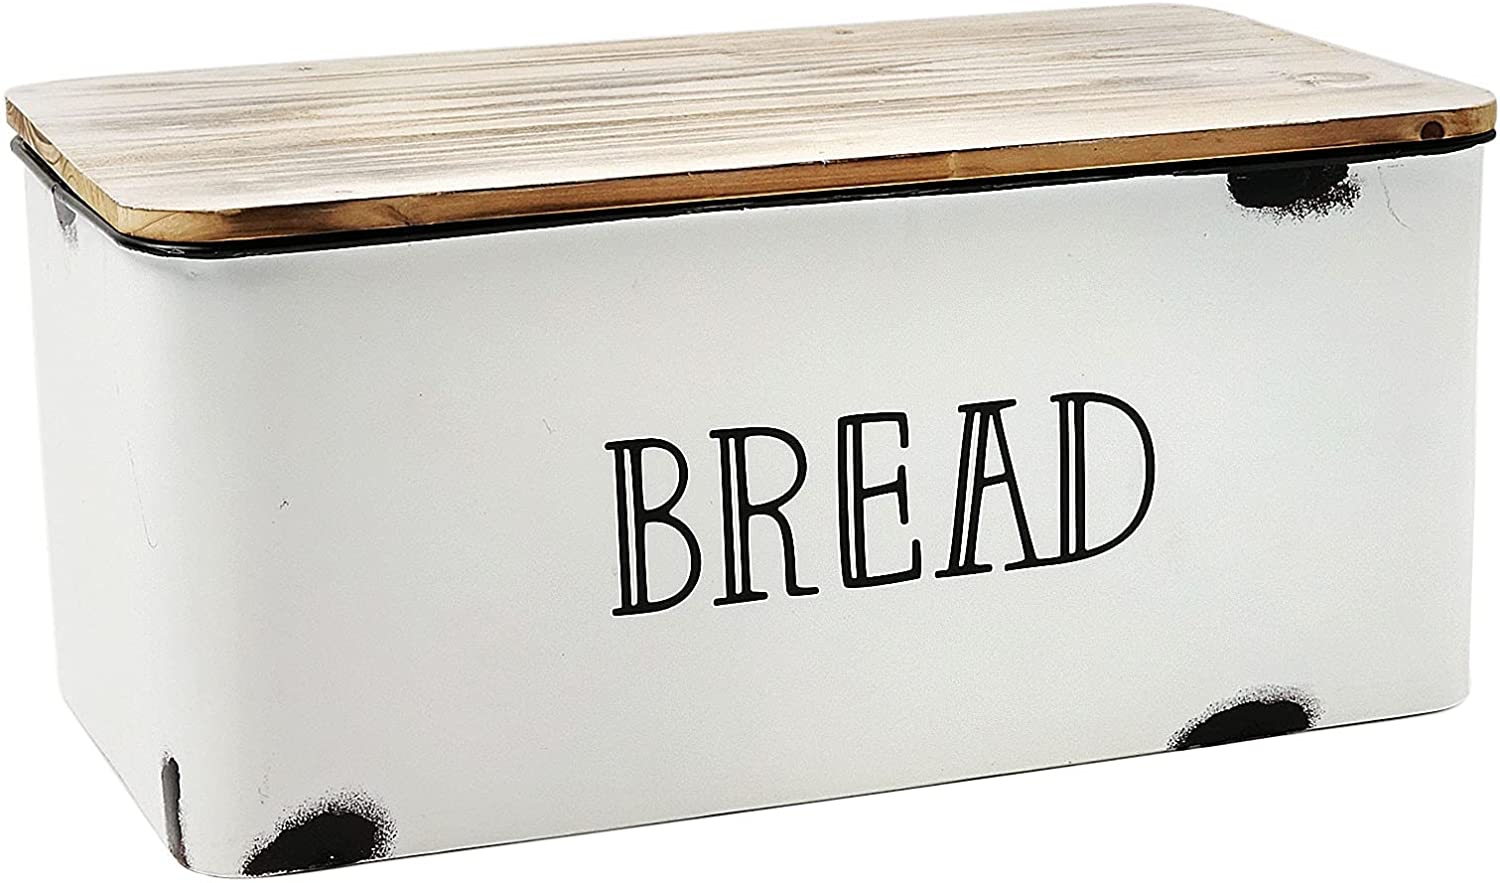 AVV Distressed Metal & Wood Bread Box